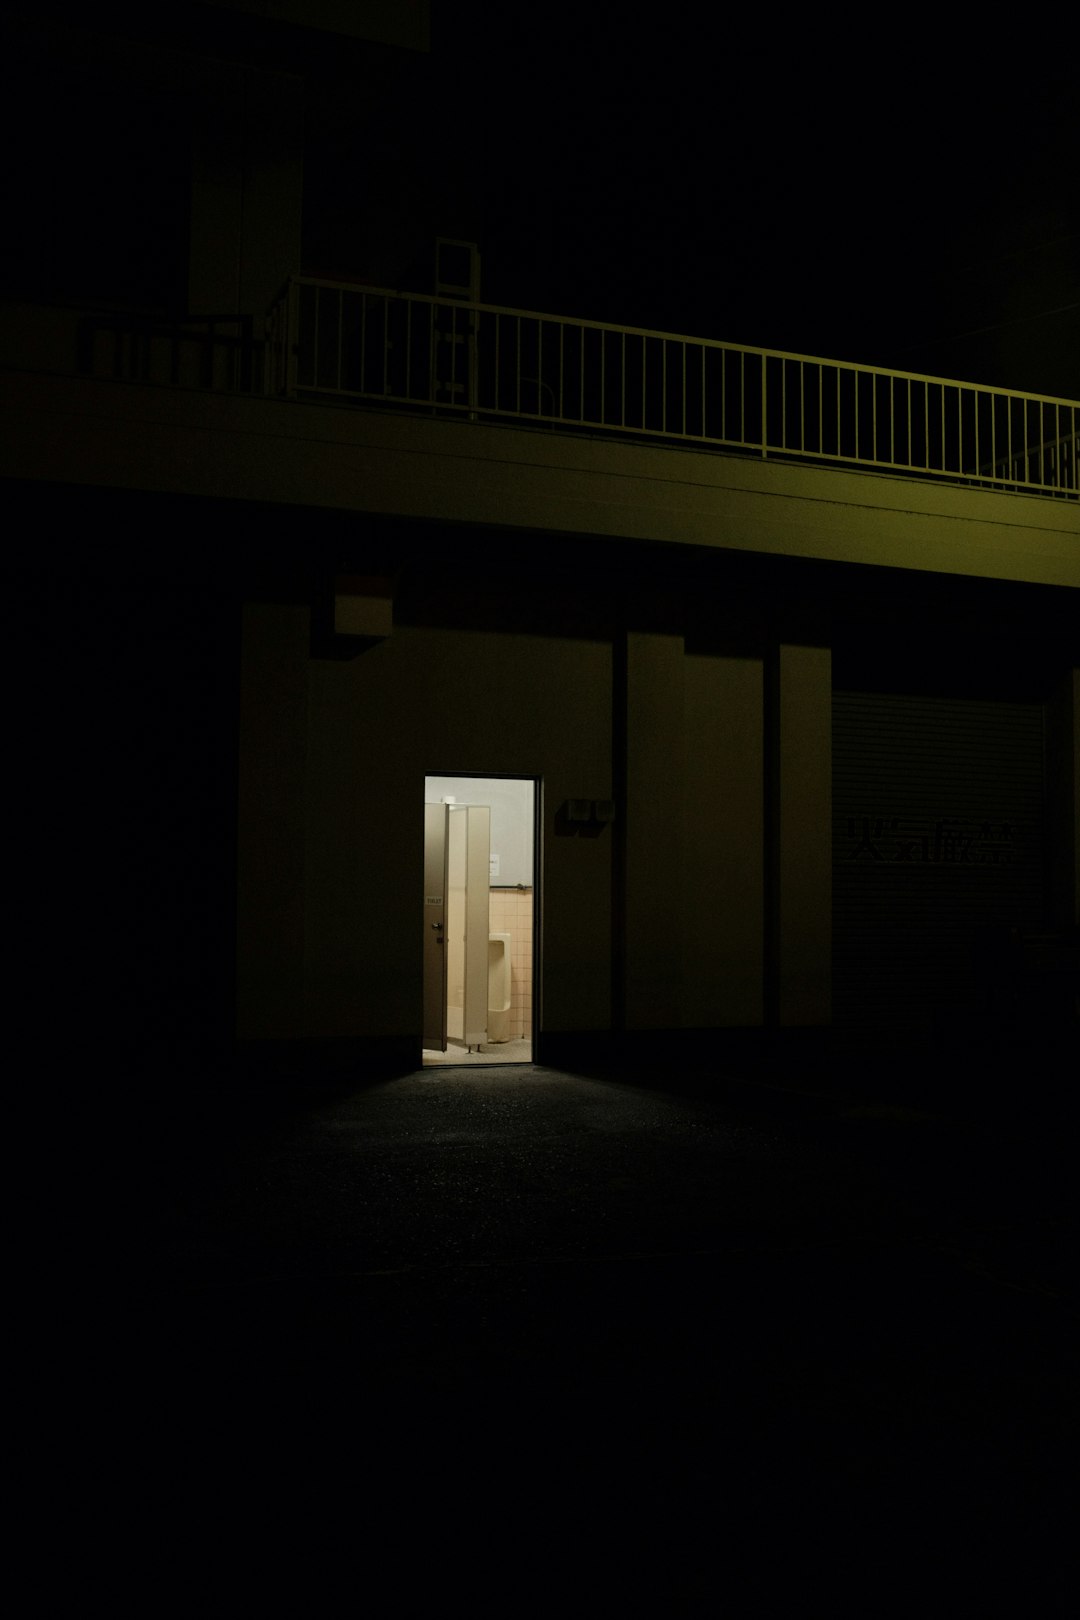 white wooden door in a dark room